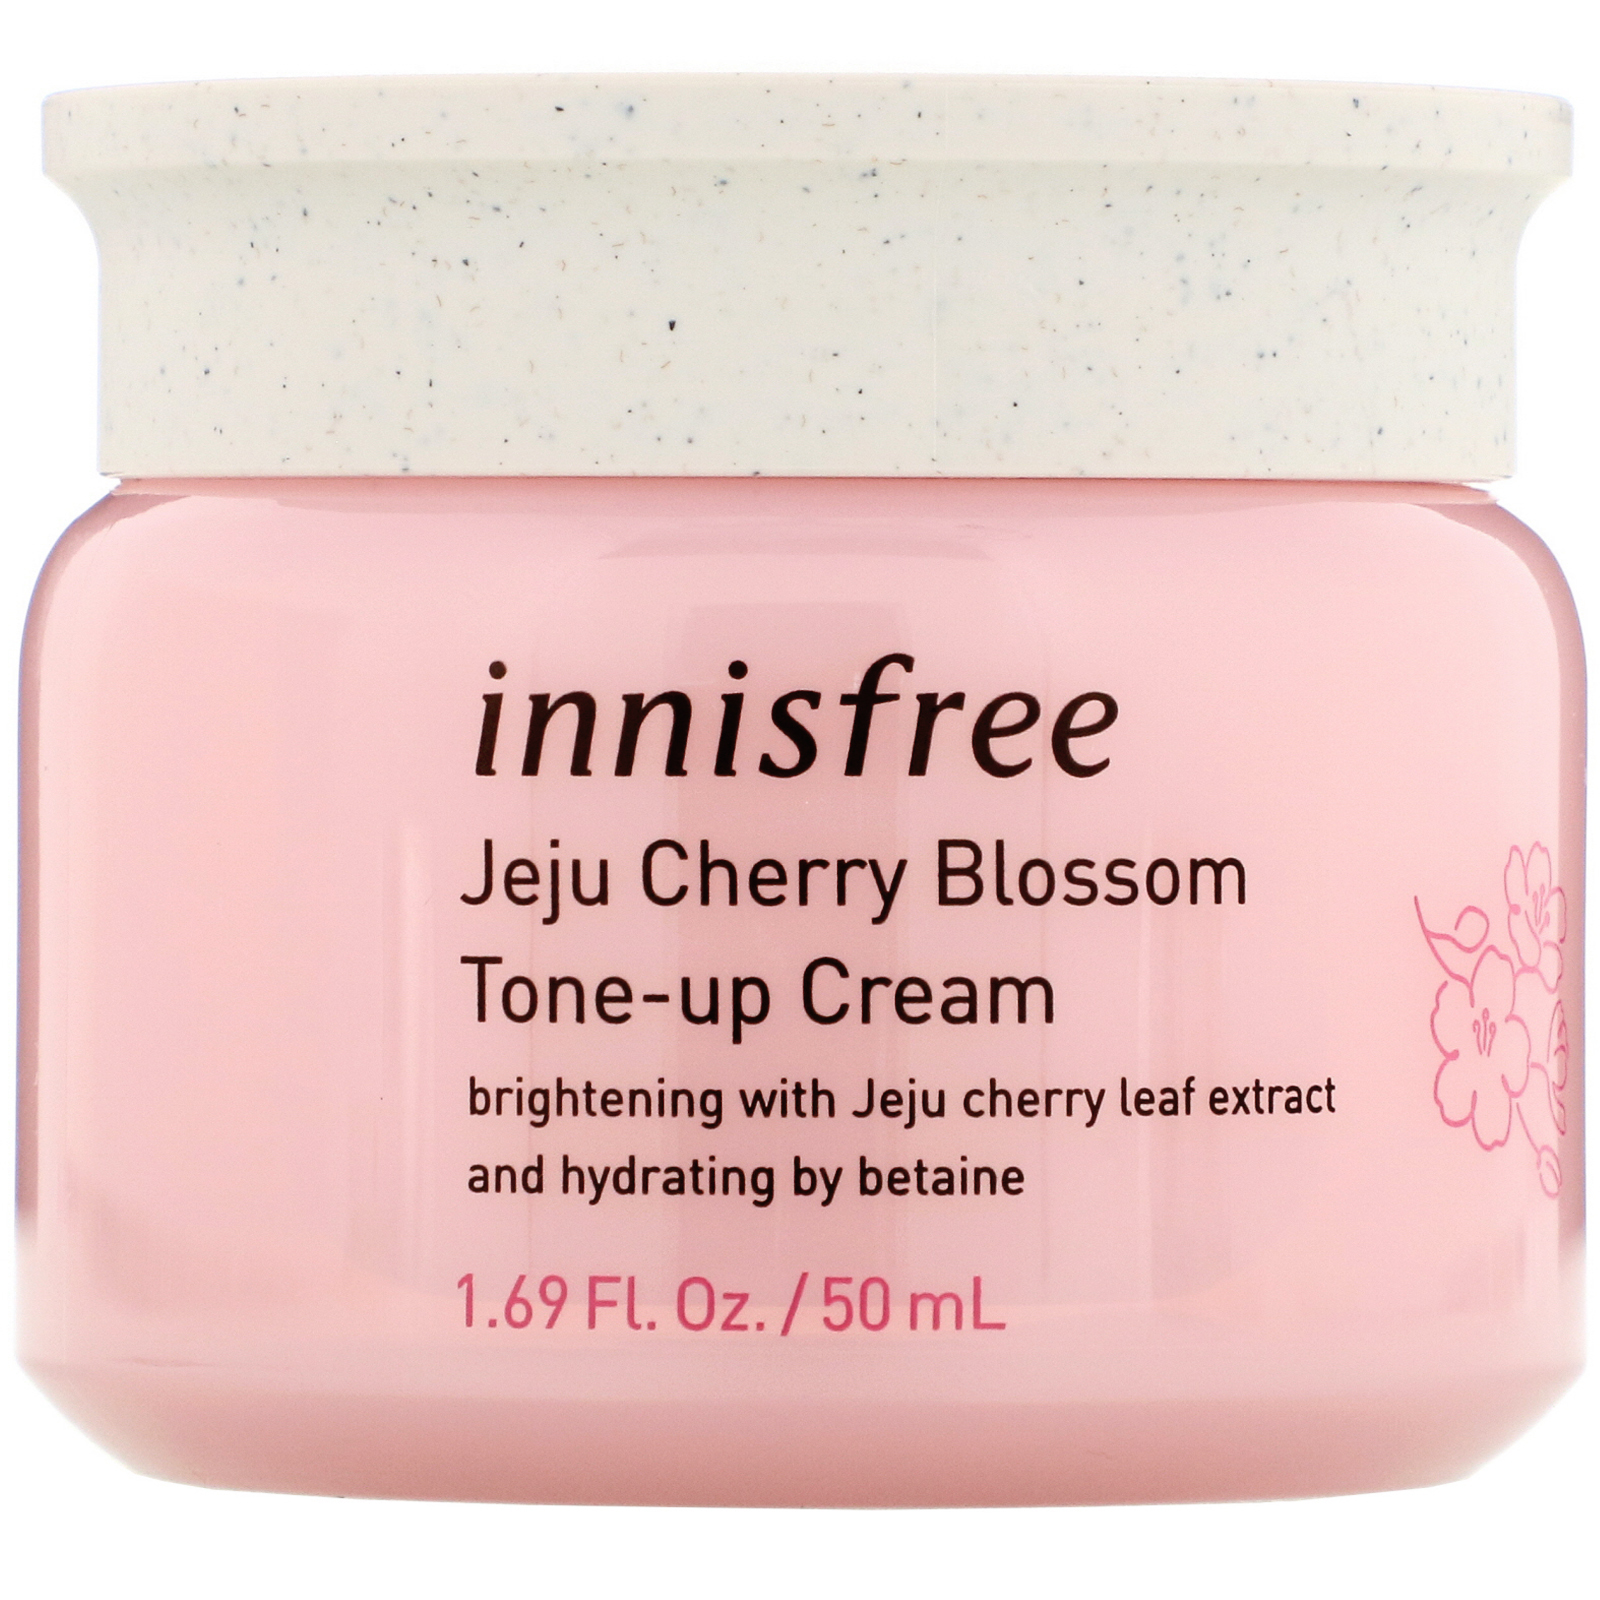 Innisfree, Jeju Cherry Blossom Tone-up Cream, 1.69 fl oz (50 ml) - iHerb